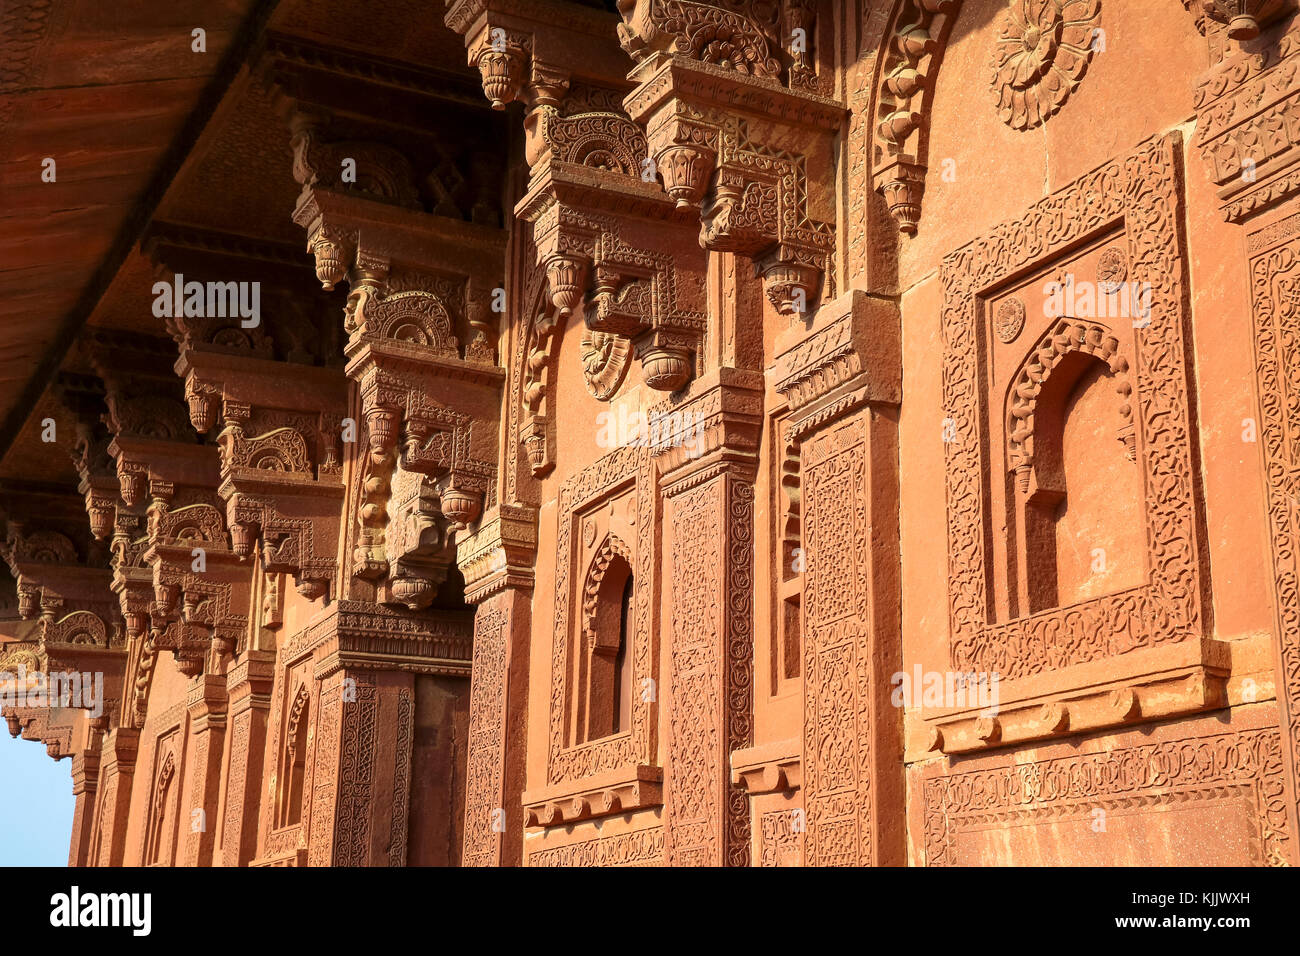 Fatehpur Sikri, fondata nel 1569 dall'imperatore Mughal Akbar, servita come la capitale dell' Impero Mughal dal 1571 al 1585. Palazzo imperiale complesso. B Foto Stock